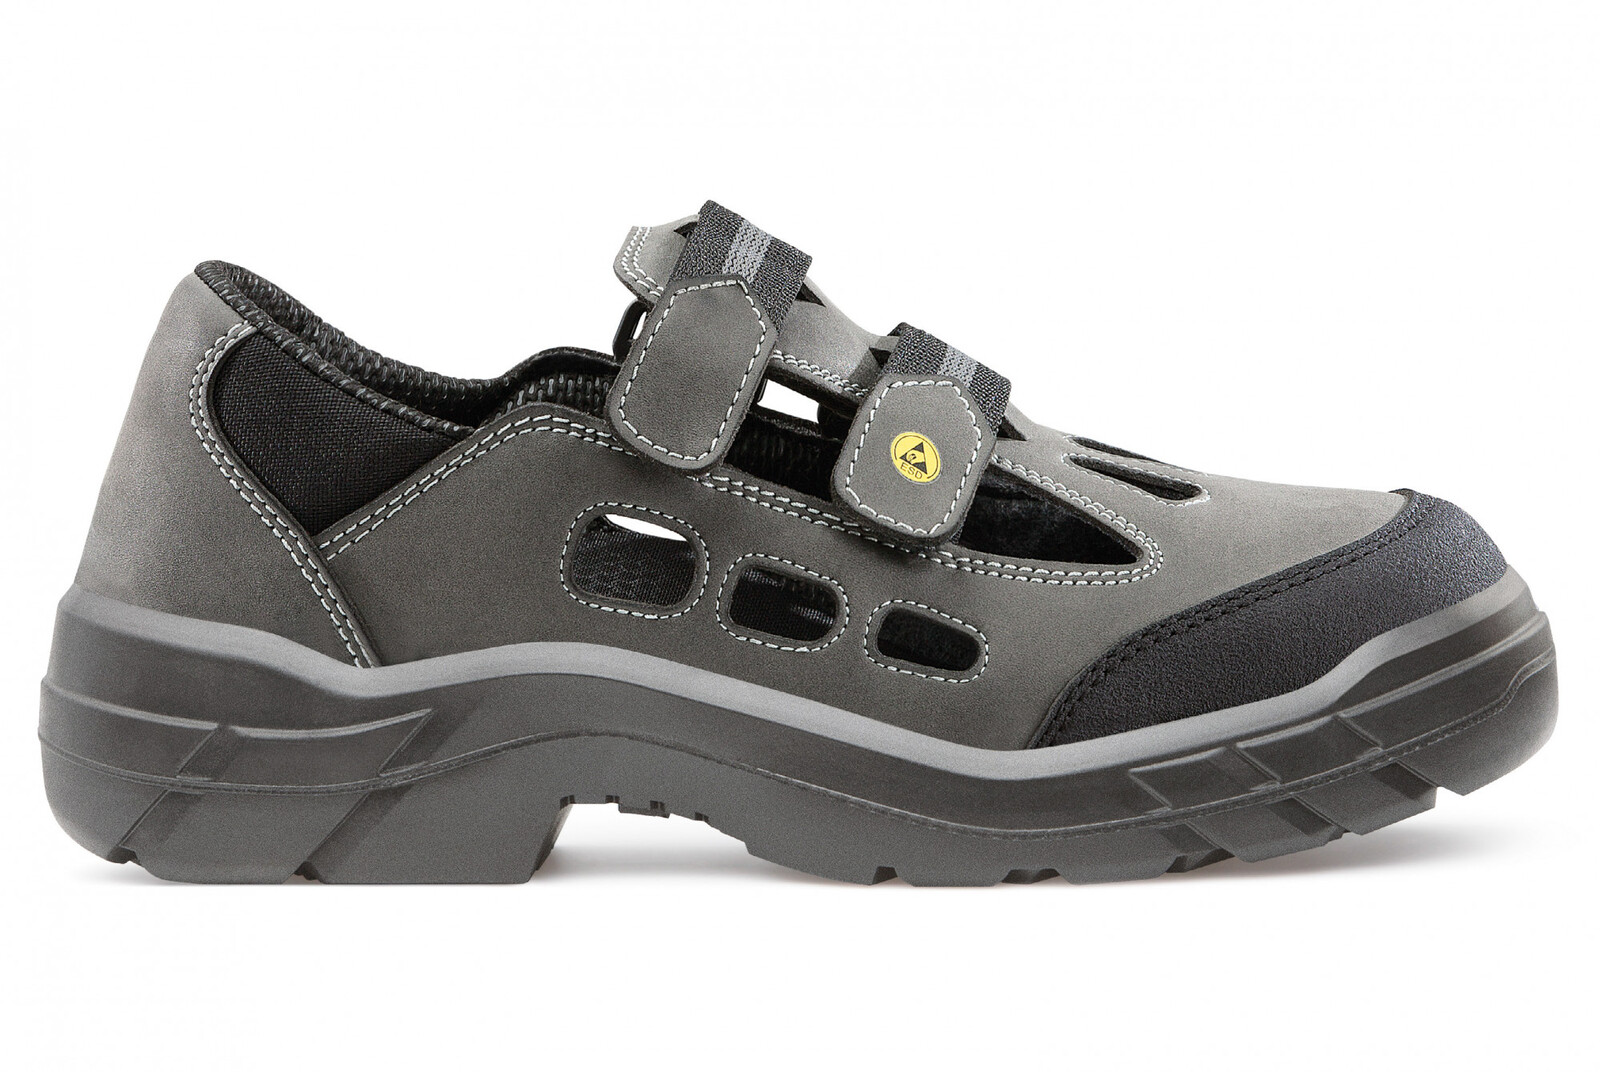 Bezpečnostné sandále  Artra Arjun 903 2560 S1 SRC ESD - veľkosť: 37, farba: sivá/čierna